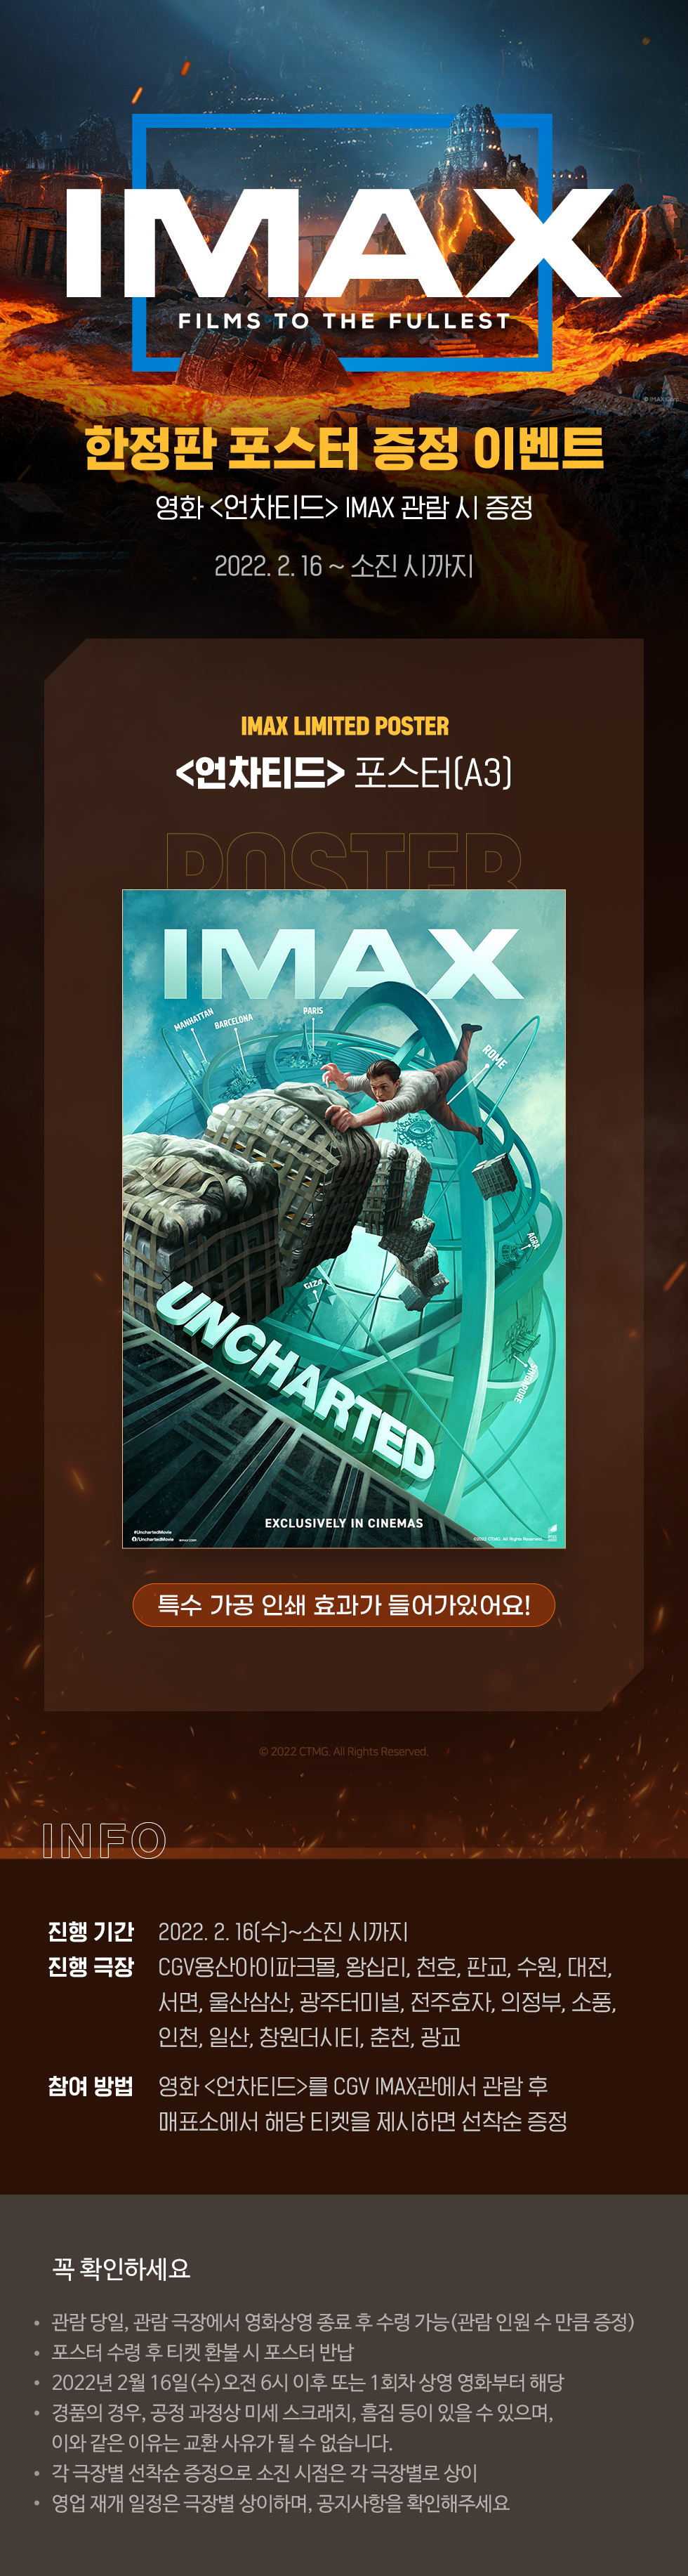 스페셜이벤트 [언차티드]
IMAX 포스터 증정